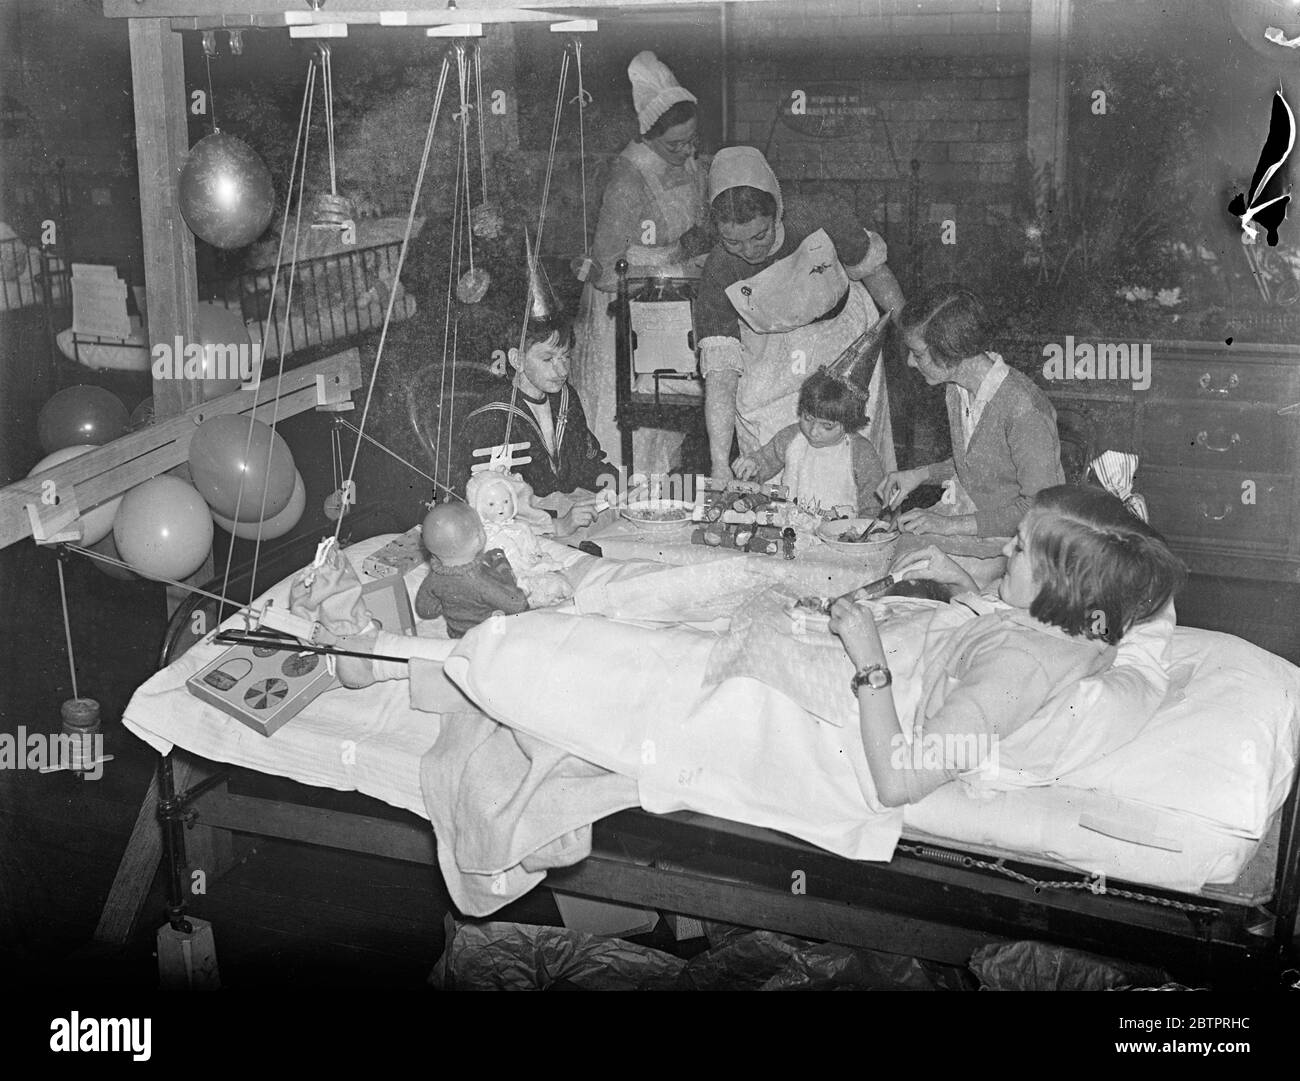 Nicht vergessen. Kinder genießen ihren Weihnachtstag im Krankenhaus. Kinder, die ihre Weihnachten in Londons Krankenhäusern verbringen mussten, wurden nicht vergessen. Krankenschwestern und Ärzte im Kinderkrankenhaus in der Great Ormond Street bringen eine saisonale Atmosphäre in die Stationen. Aber die Shows, die Studie, Patienten essen ihr Weihnachtsessen, serviert von einem der Krankenschwestern, in einer Station im Great Ormond Street Hospital, Bloomsbury. 25 Dezember 1937 Stockfoto